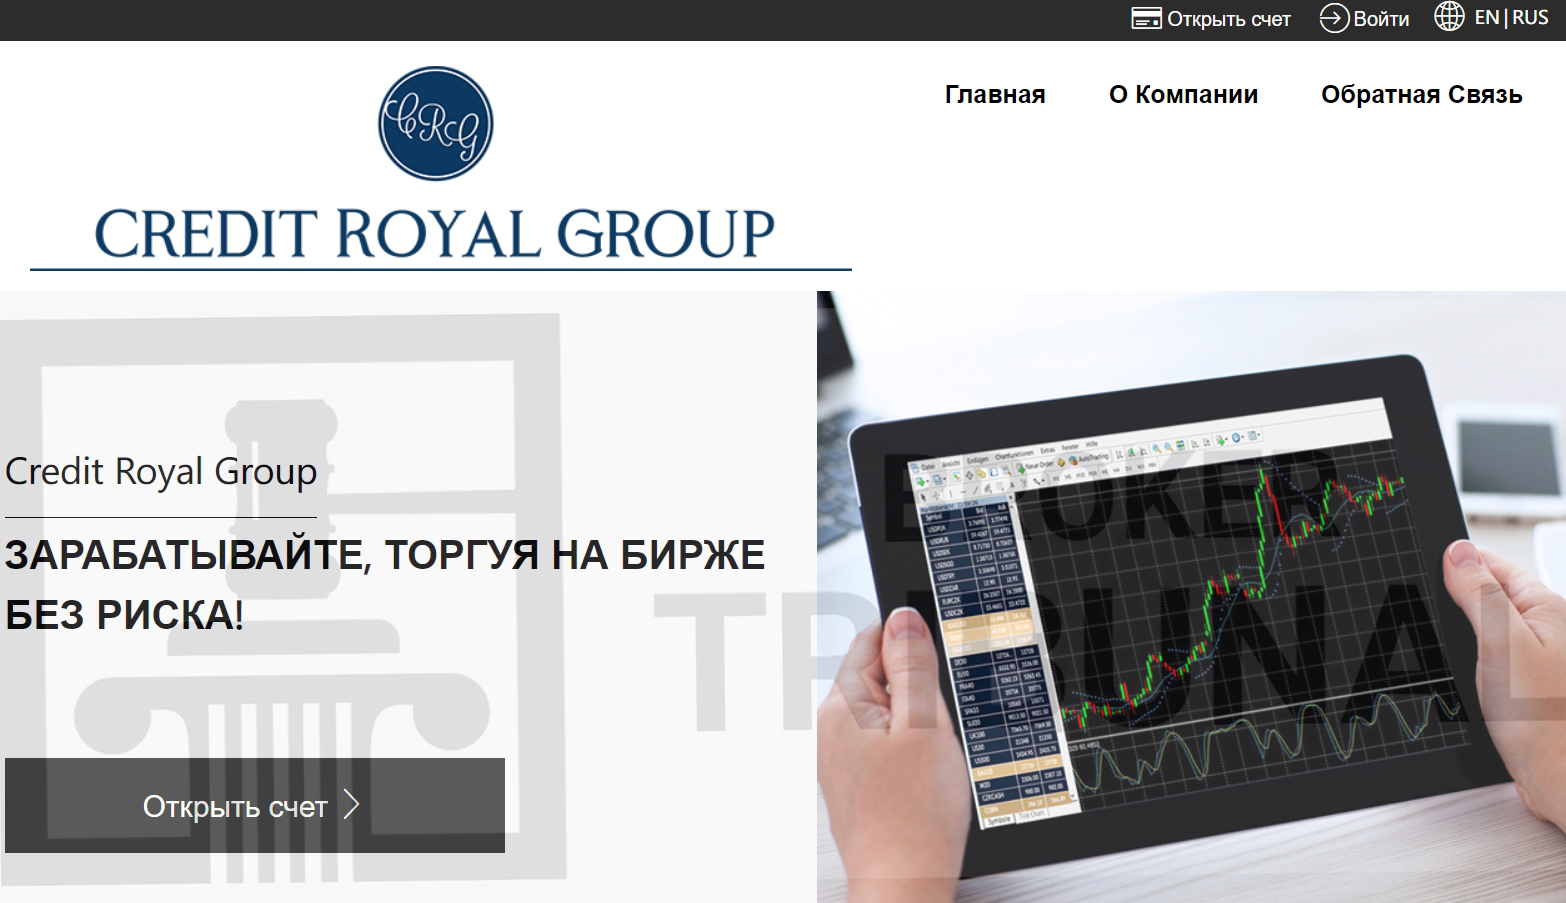 Credit Royal Group 